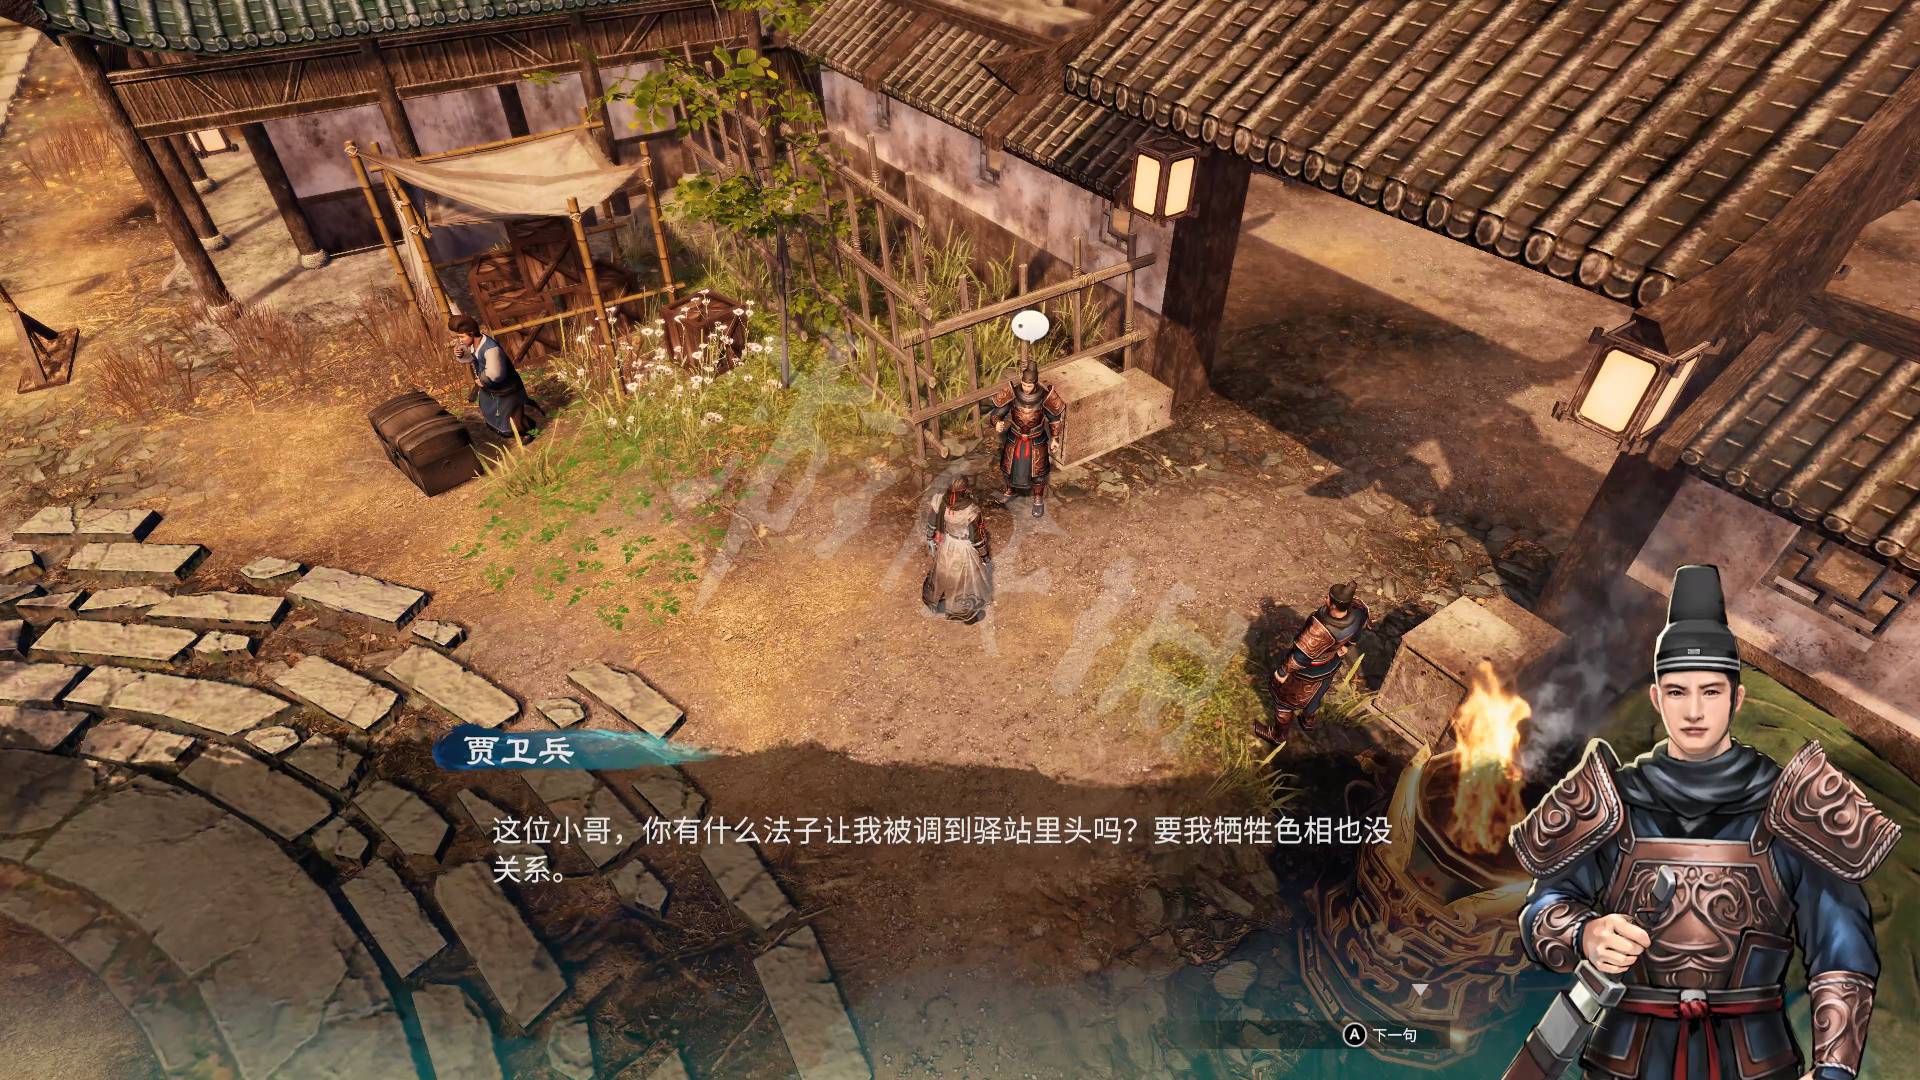 《天命奇御2》全流程解谜图文攻略 基础系统玩法教学_京南驿-驿站街道